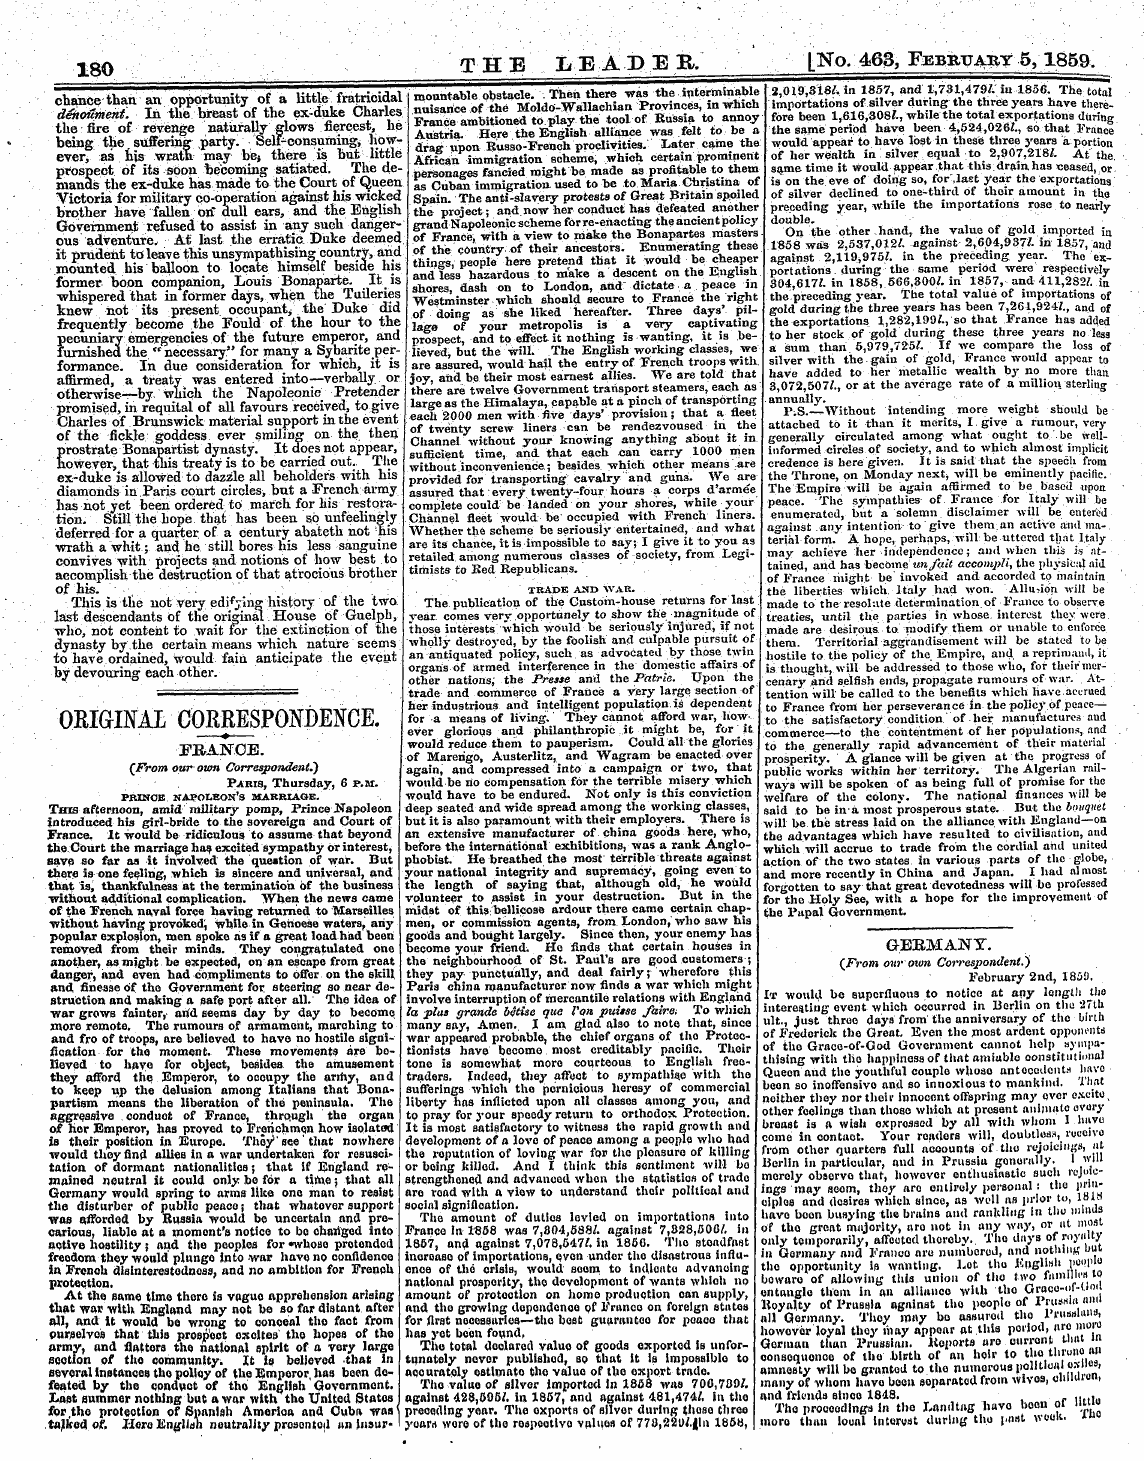 Leader (1850-1860): jS F Y, 2nd edition - Ullkxljnal Oulikjiojruinjl'jd/Jnl' ¦